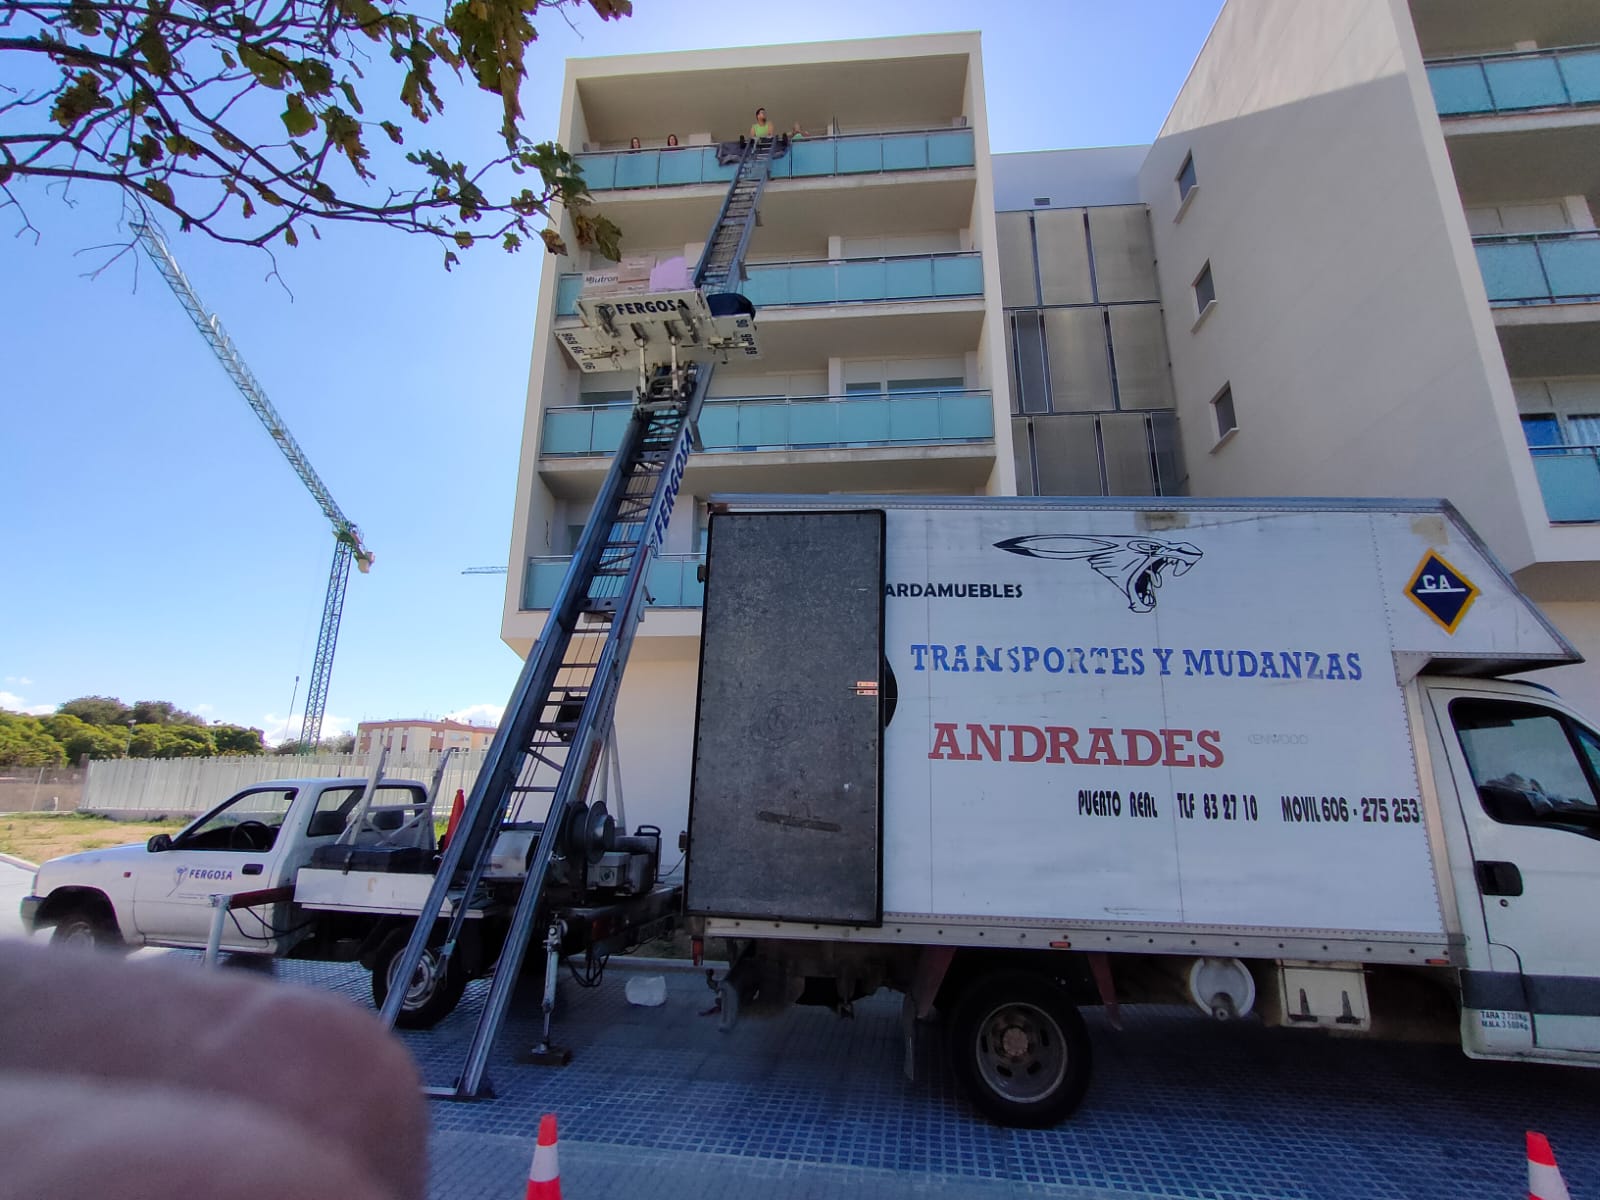 Images MUDANZAS Y TRANSPORTES ANDRADES - Mudanzas - Guardamuebles y Montajes de muebles en Puerto Real